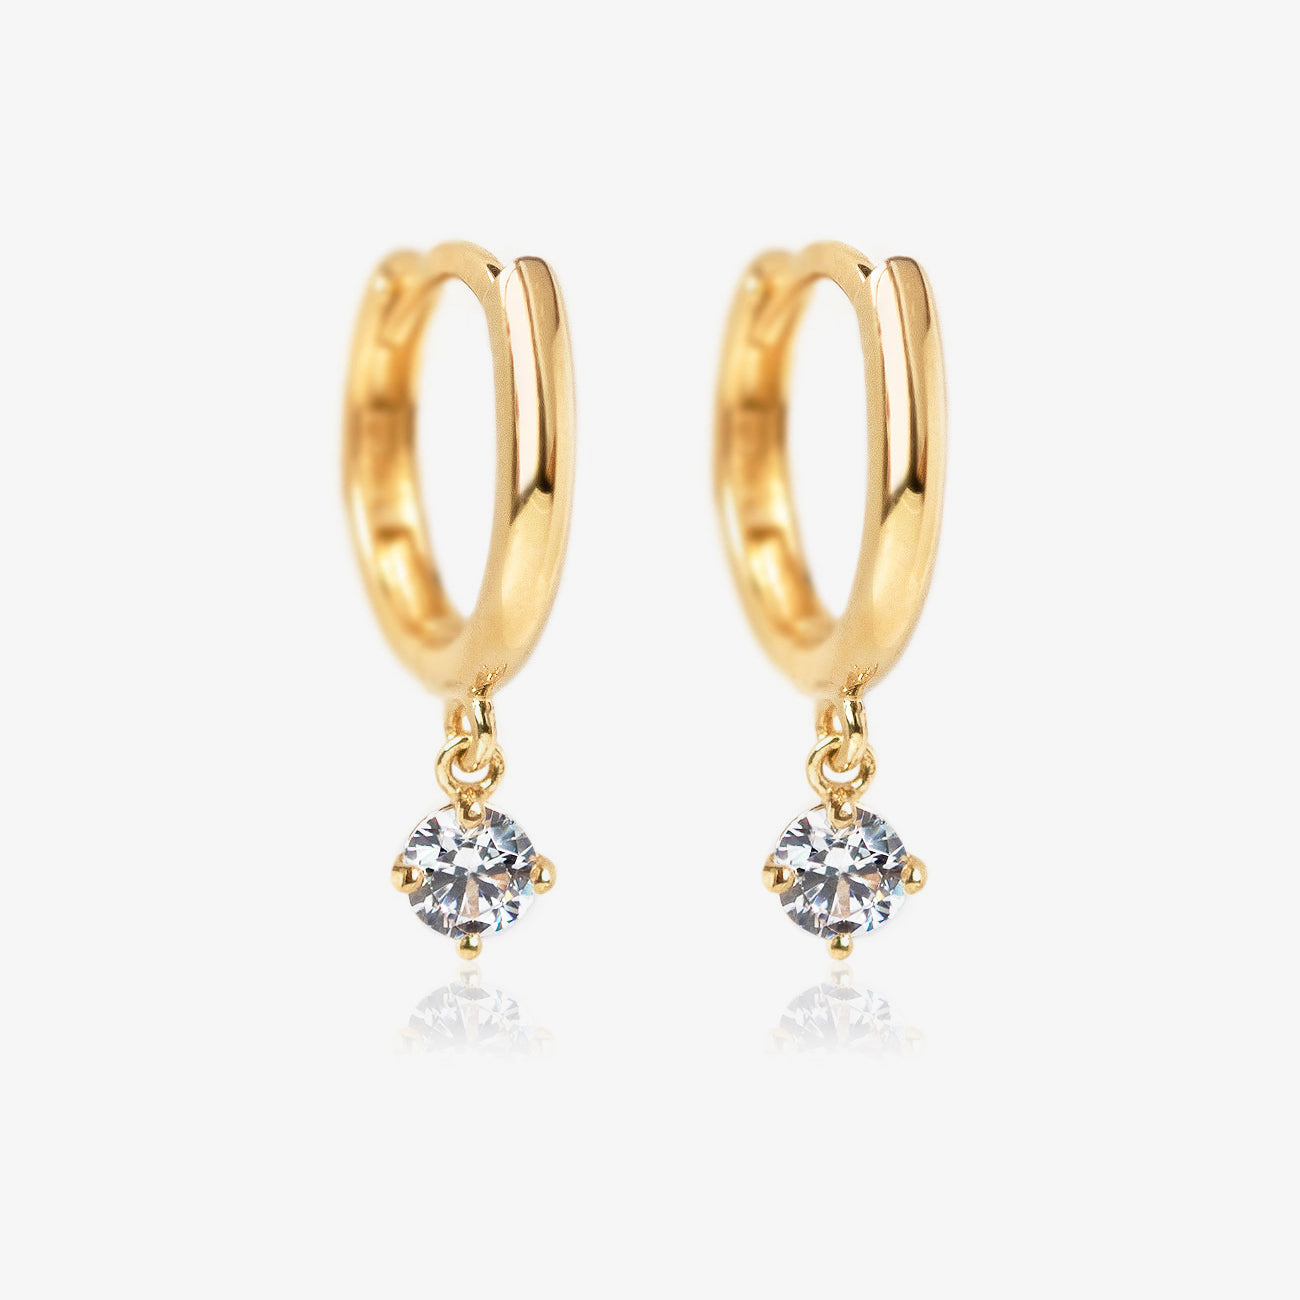 Gold Huggie Earrings, Hoop Earrings, Small Hoop Earrings – AMYO Jewelry